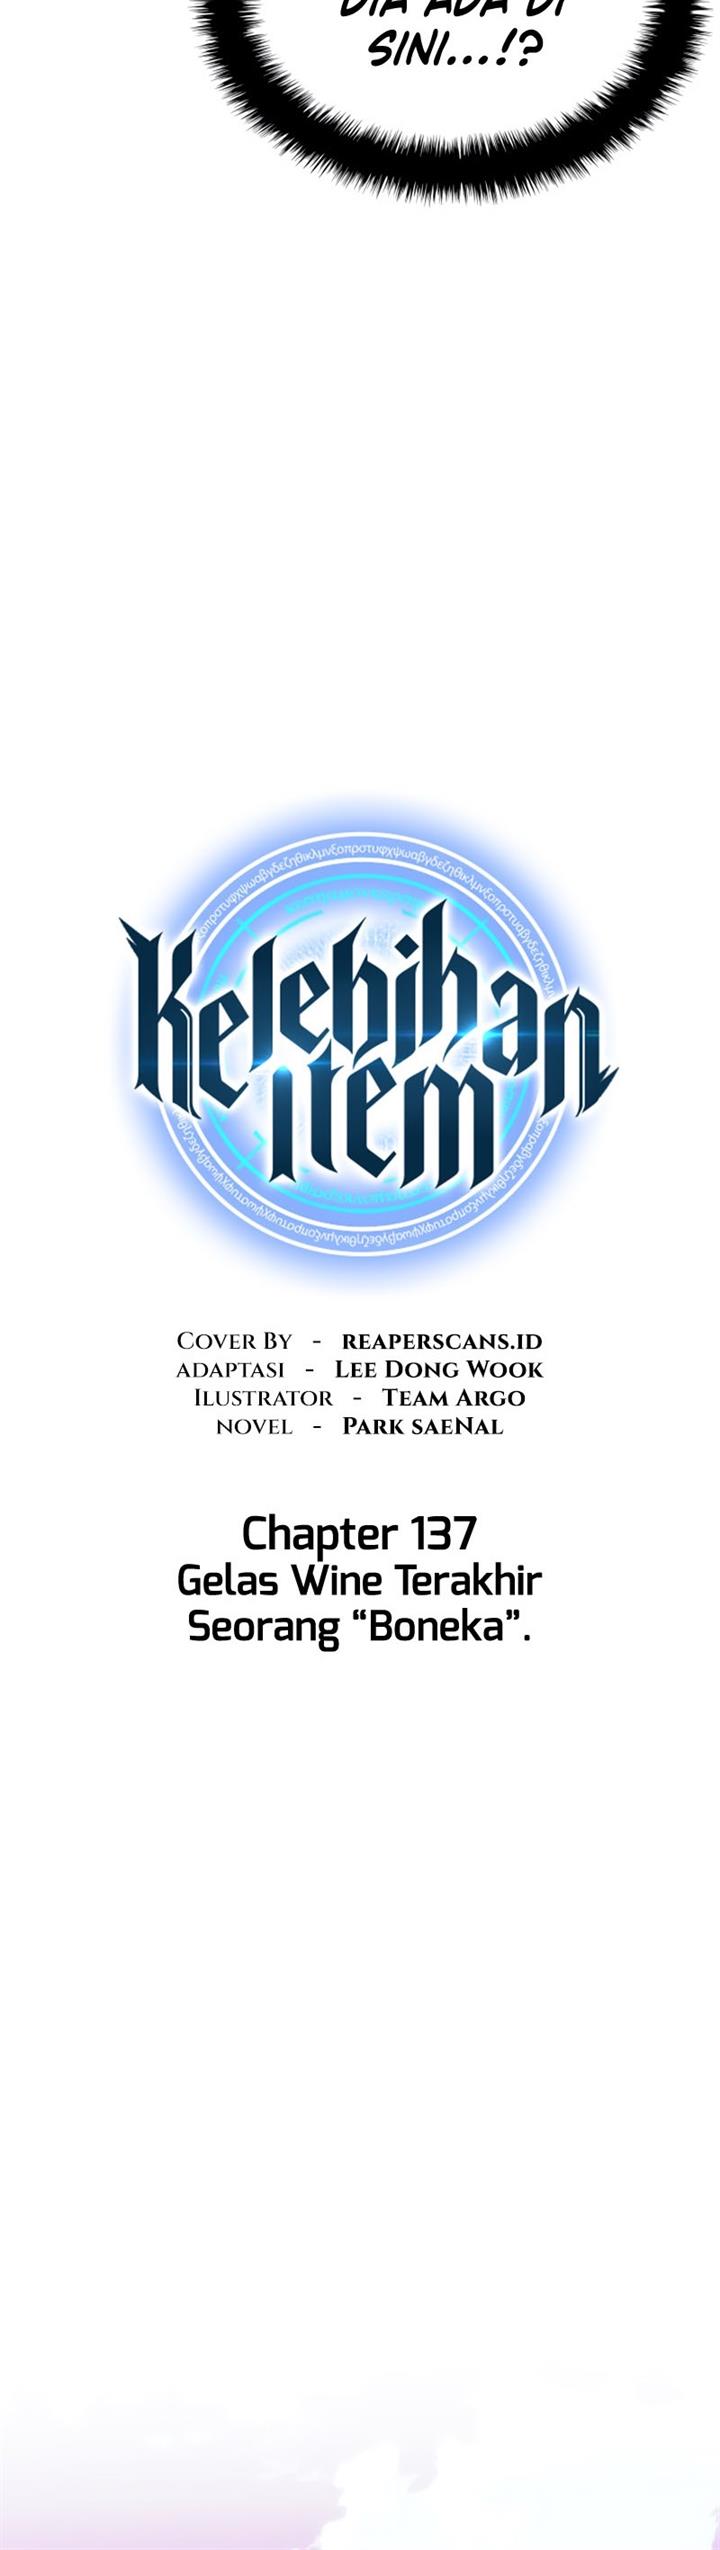 Kang Item Chapter 137